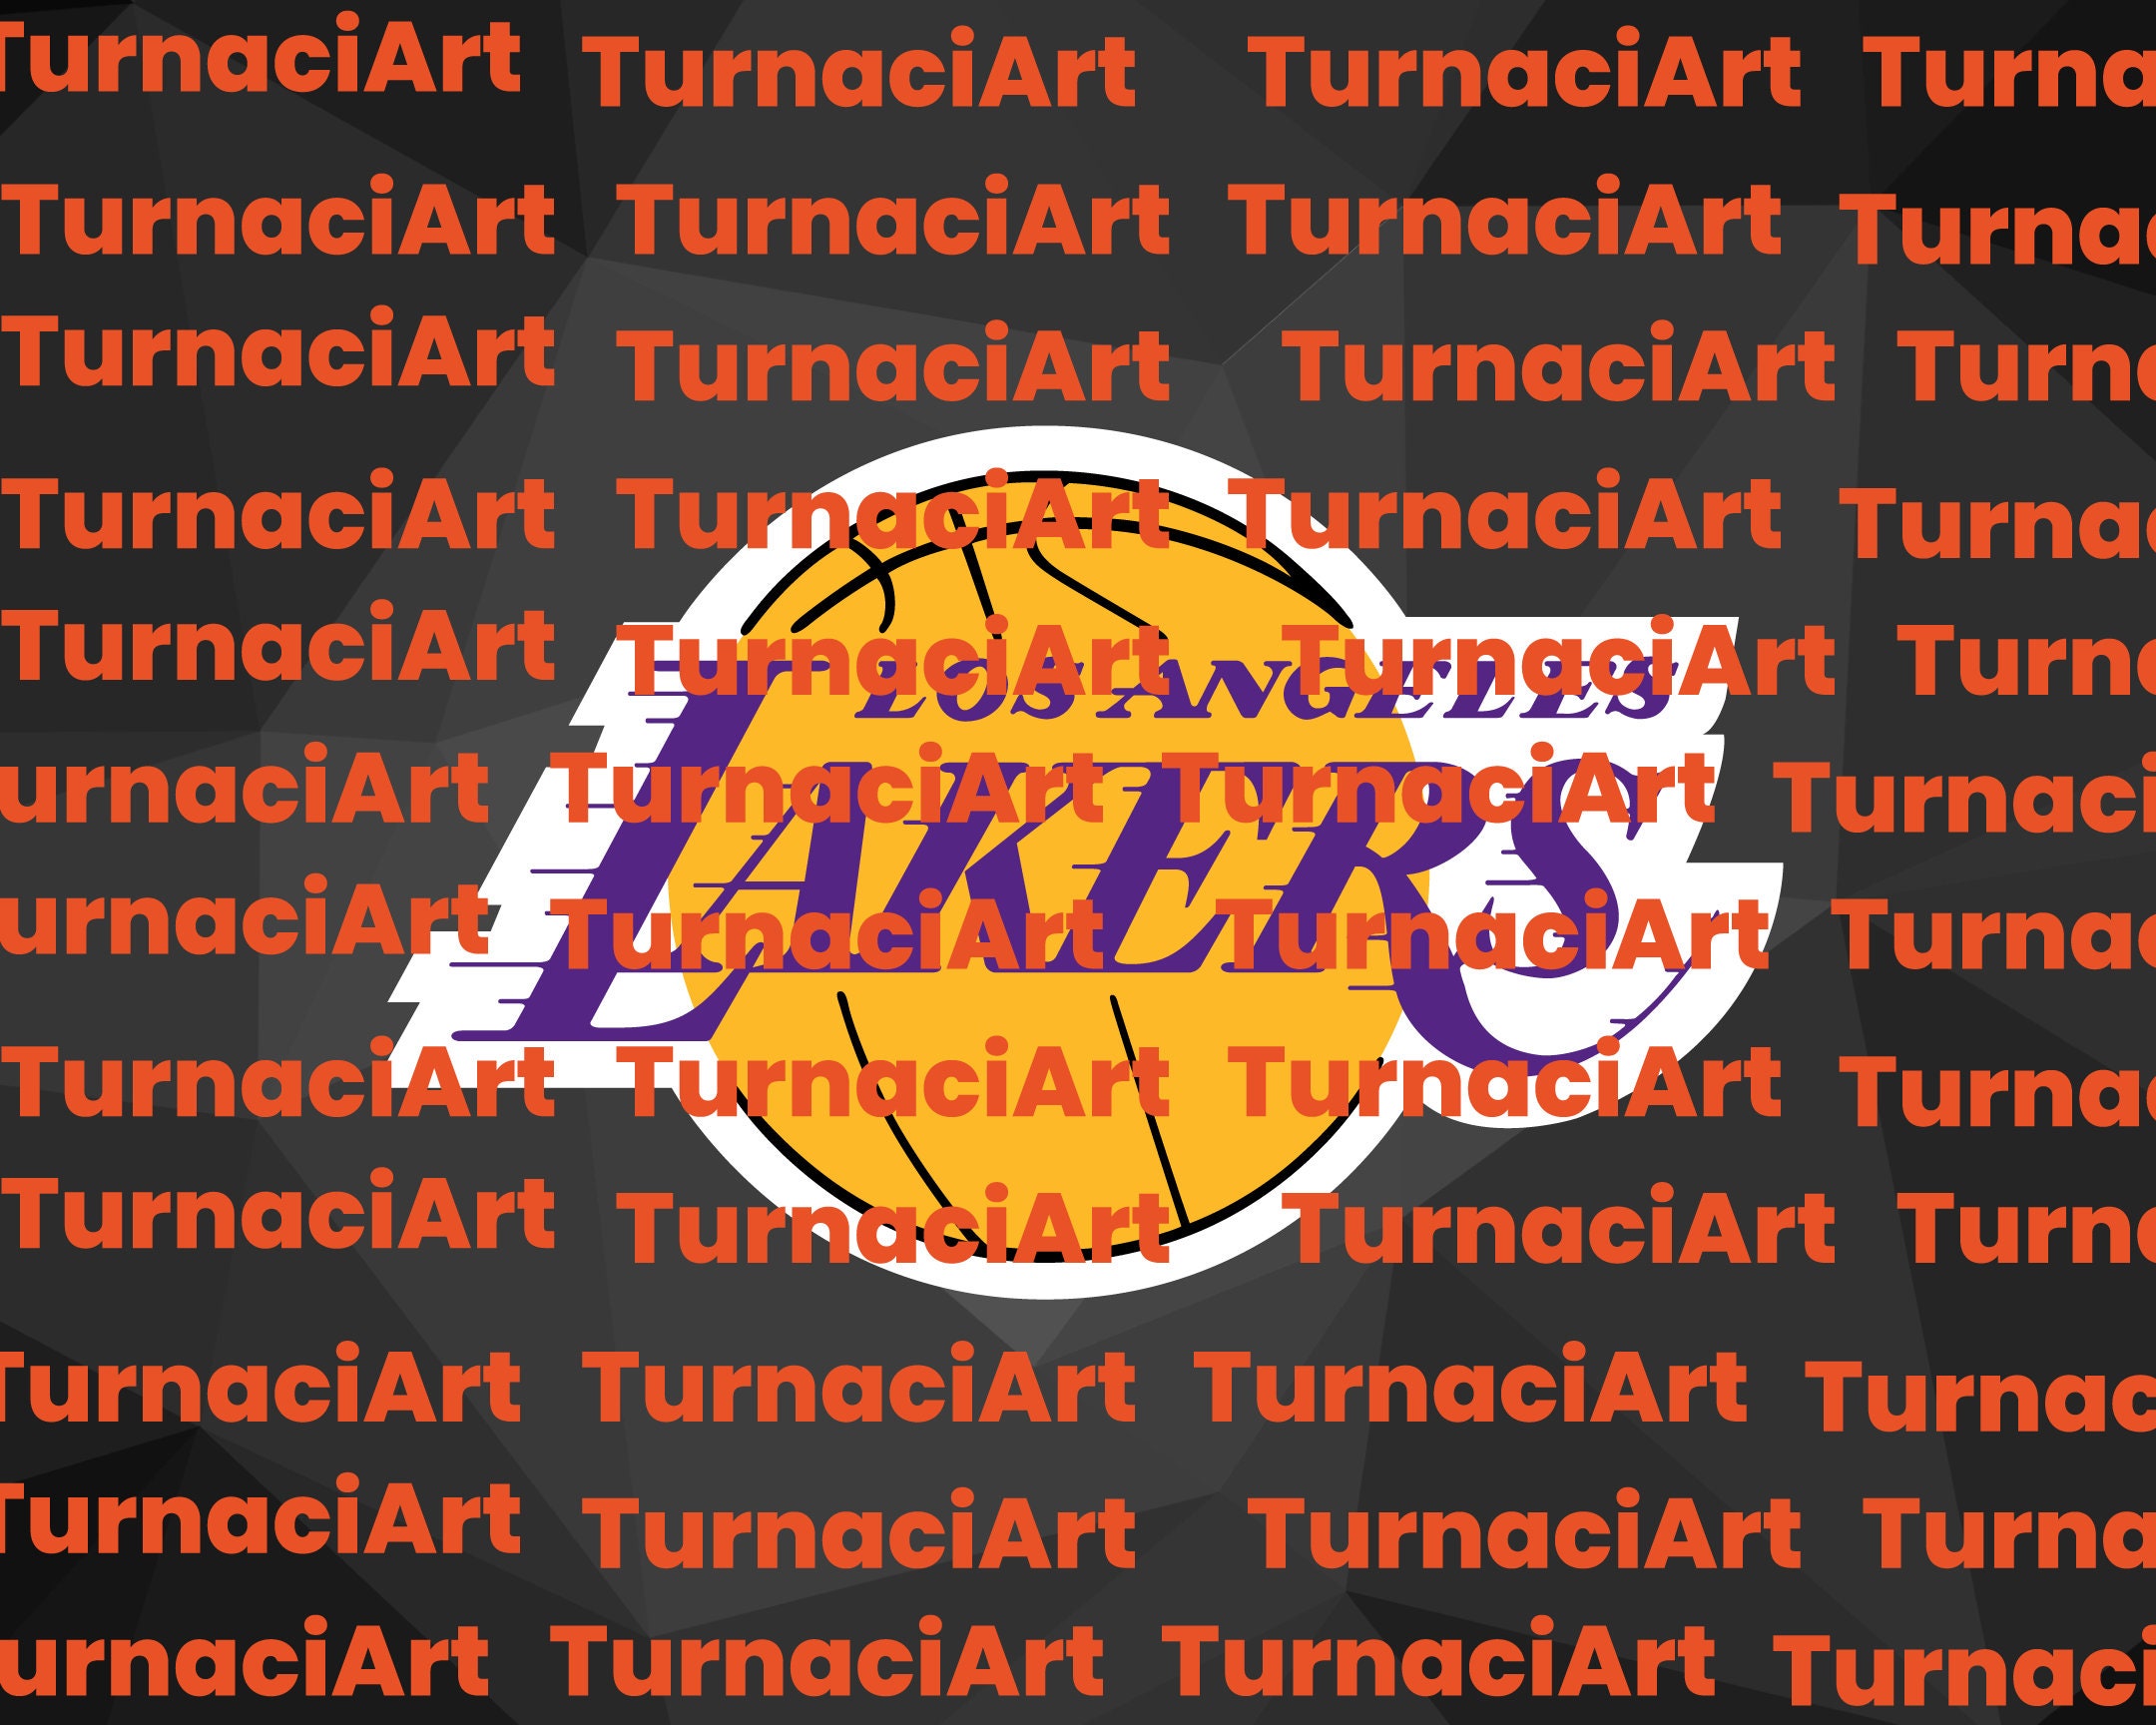 Lakers 21-22: limpieza y renovación ¿Quiénes forman la plantilla?